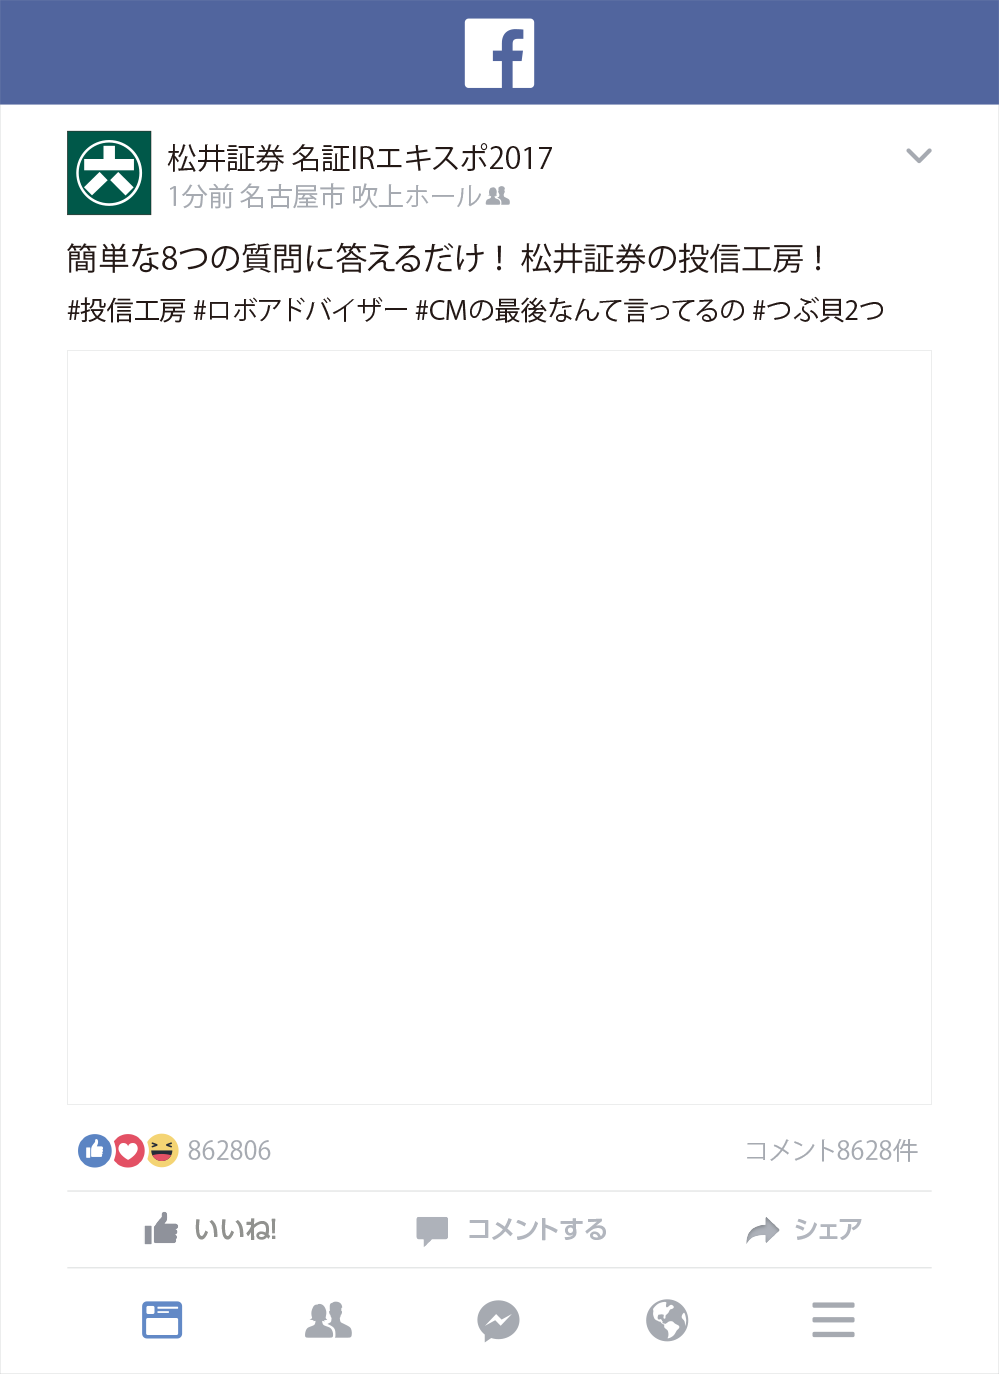 松井証券 名証IRエキスポ2017 SNSパネル